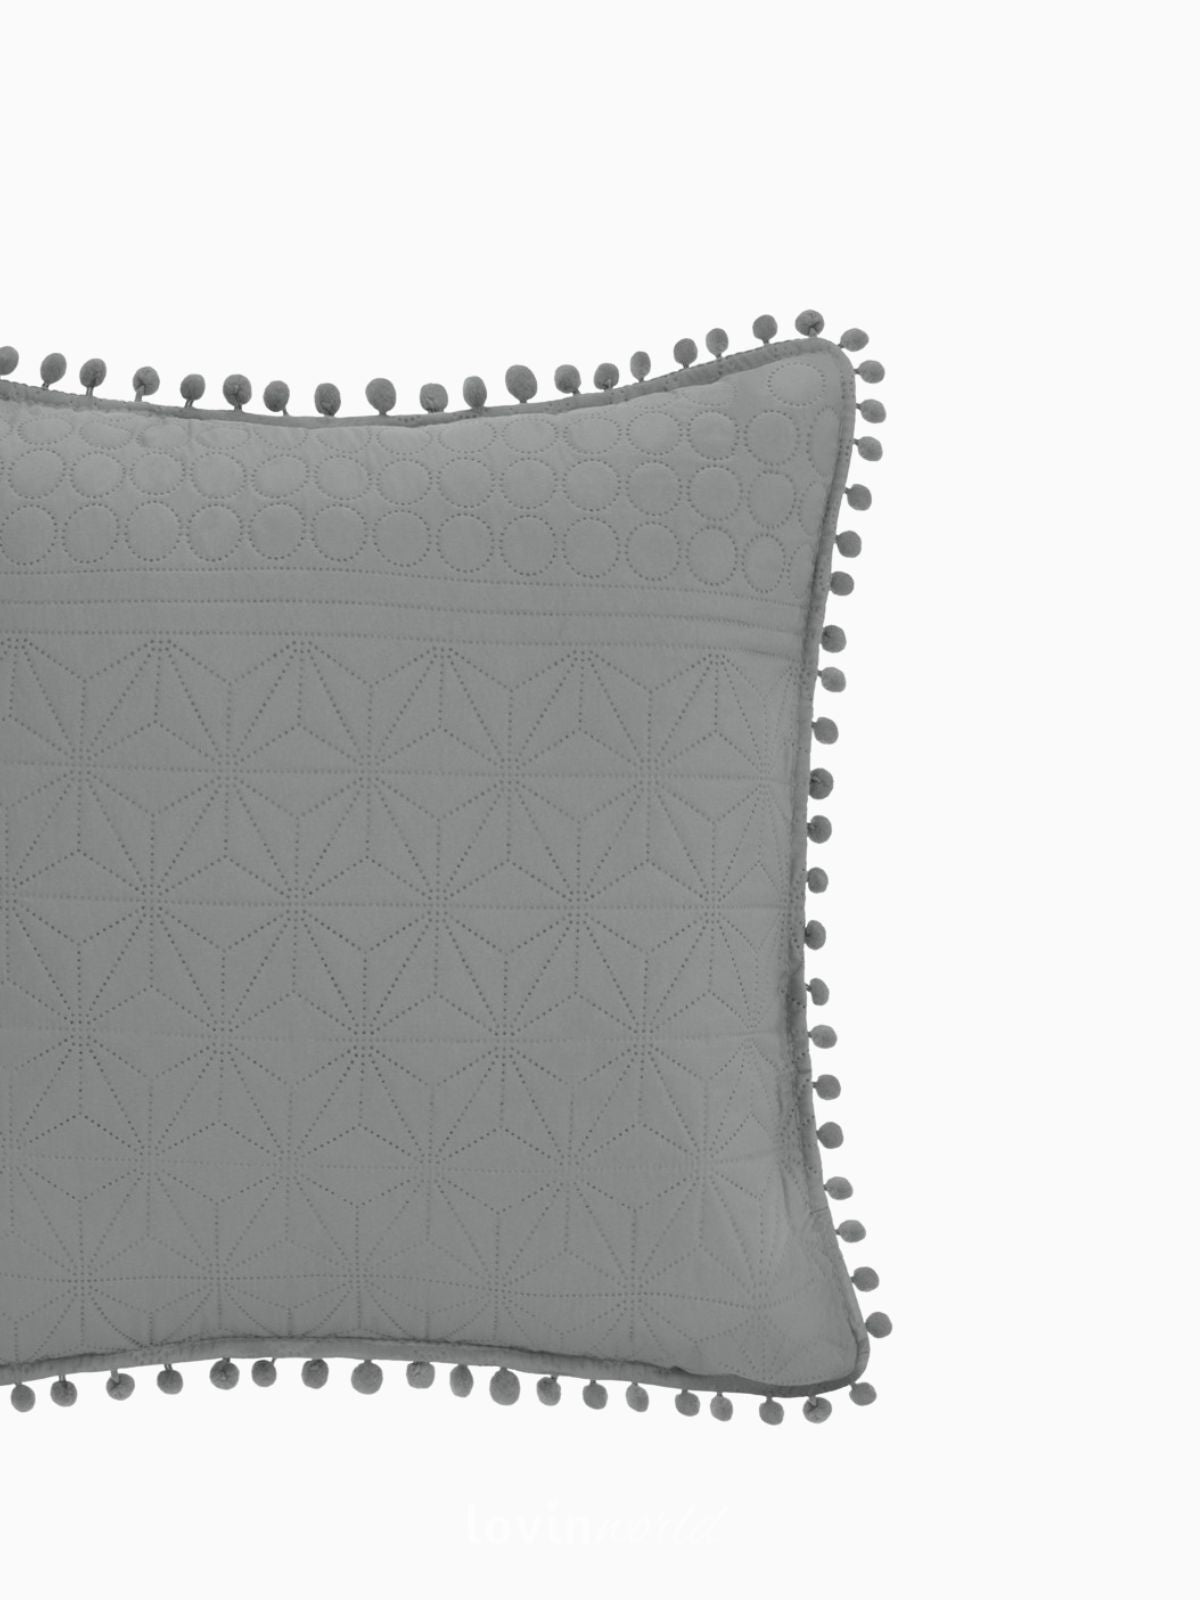 Cuscino decorativo Meadore in colore grigio 45x45 cm.-3